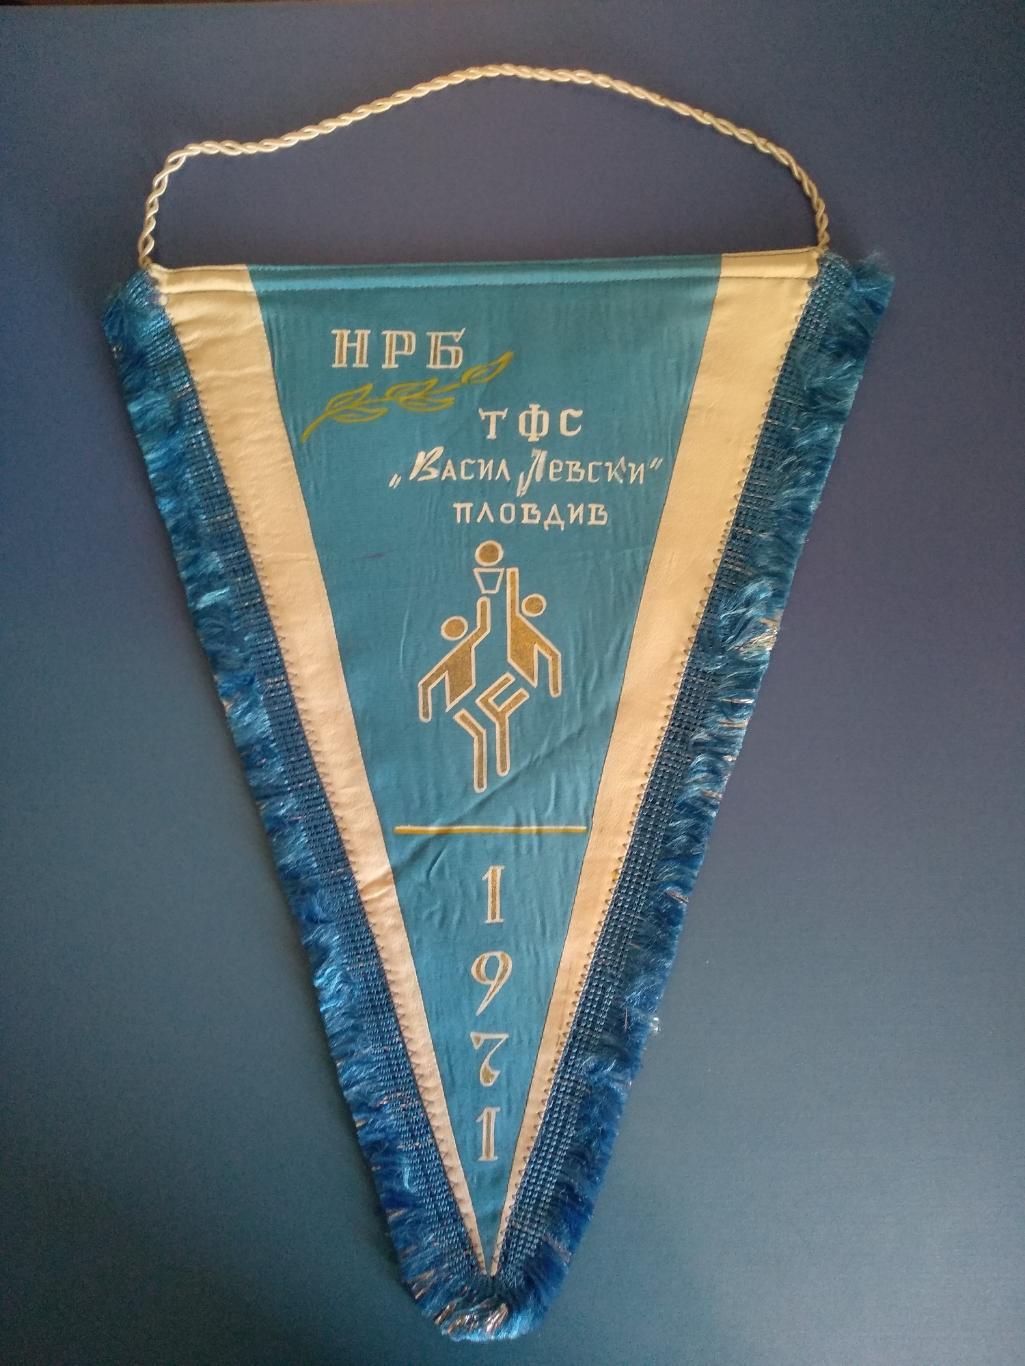 Клубный вымпел ТФС Висил Левски Пловдив Болгария 1971. Баскетбол. Болгария 1971